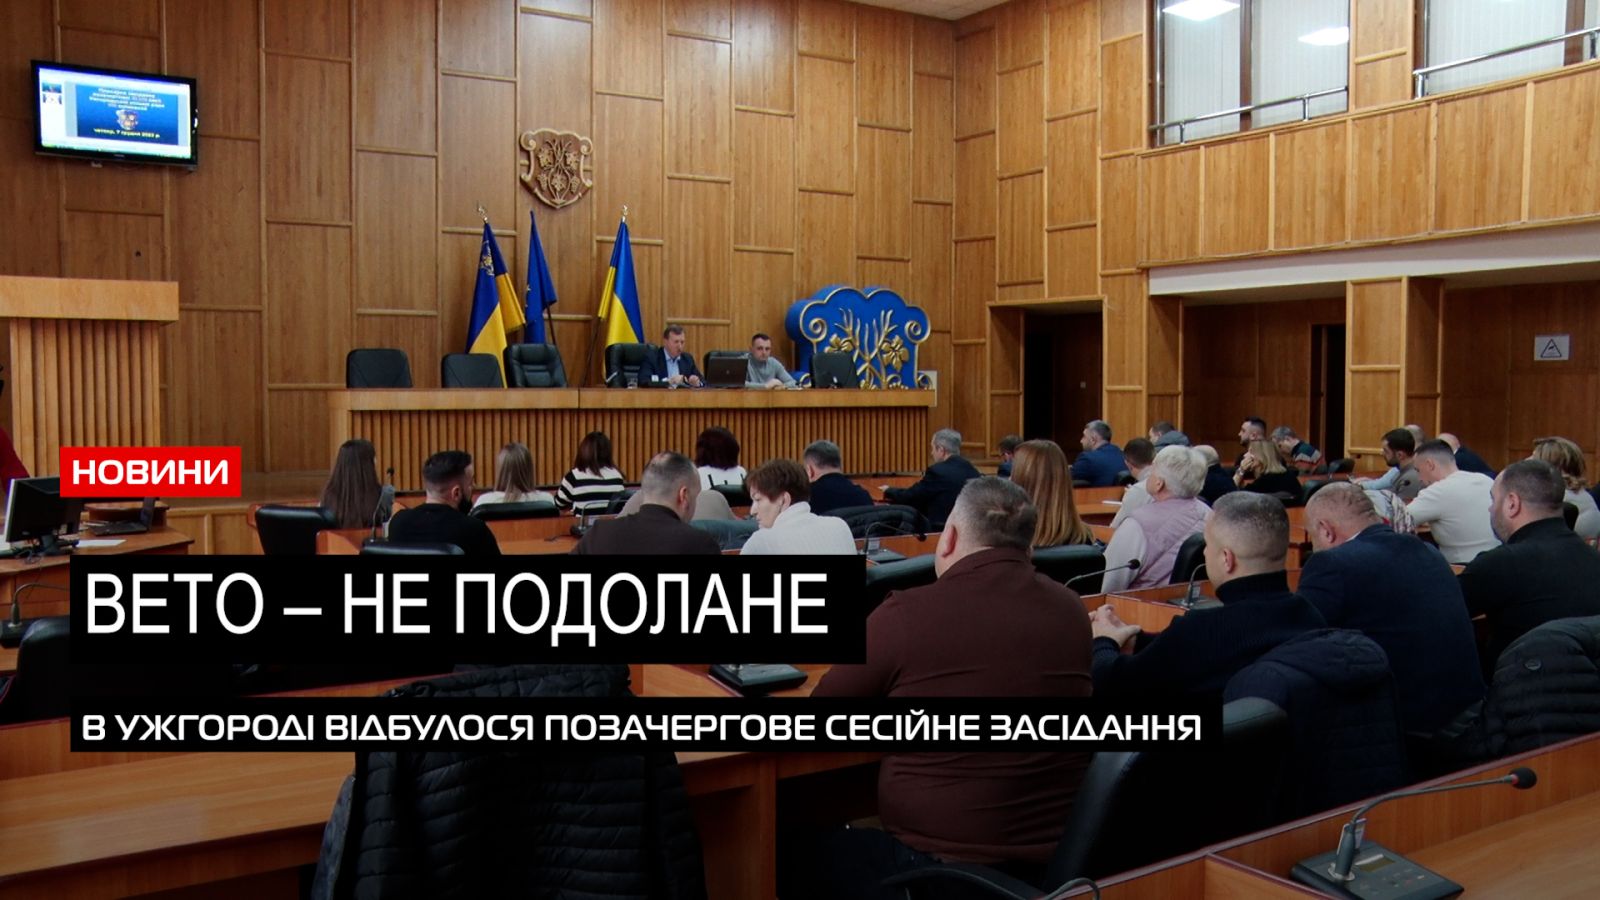  Вето голови – не подолали: які питання розглядали на позачерговій сесії в Ужгороді (ВІДЕО) 0